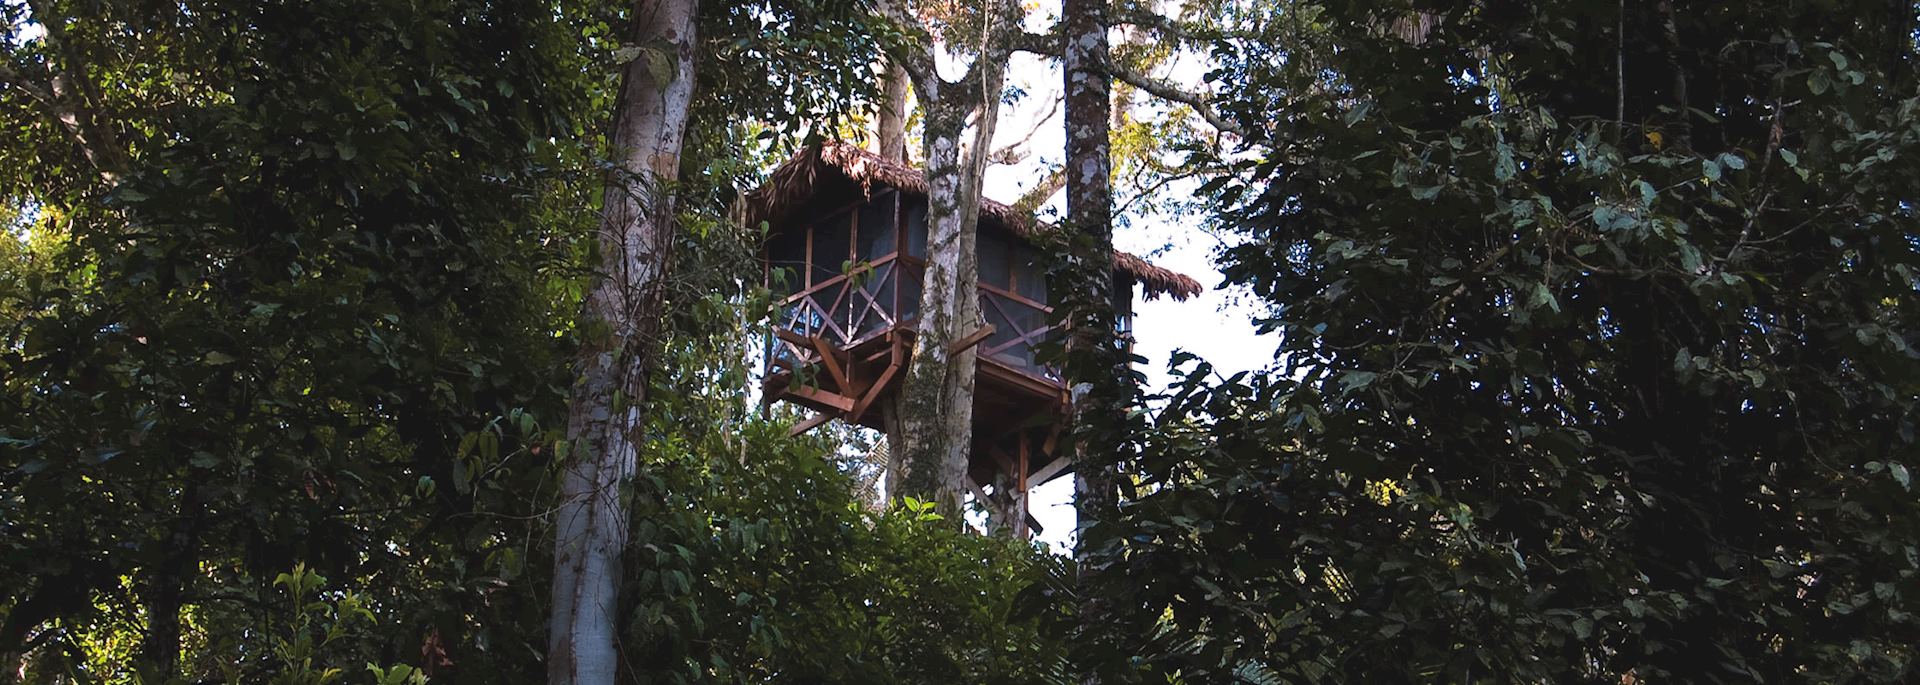 Canopy Tree house, Reserva Amazonica